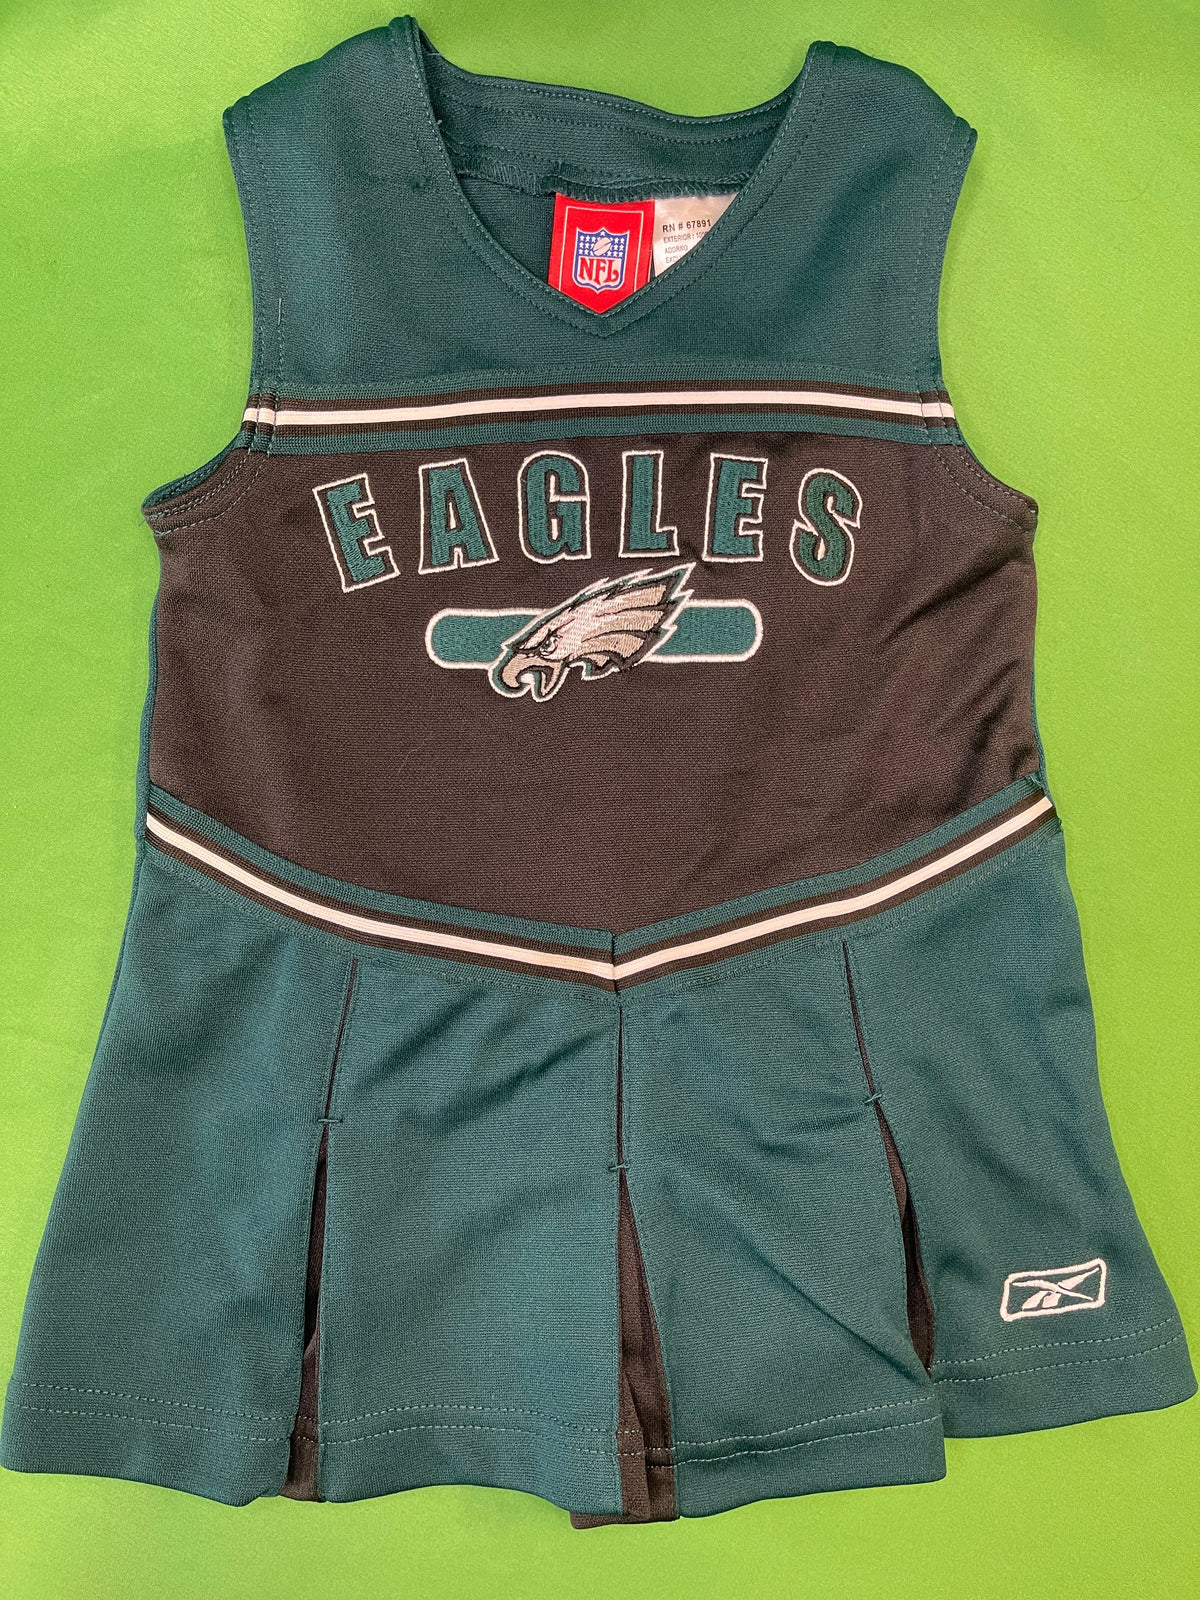 NFL Philadelphia Eagles Cheerleader Dress Toddler 3T